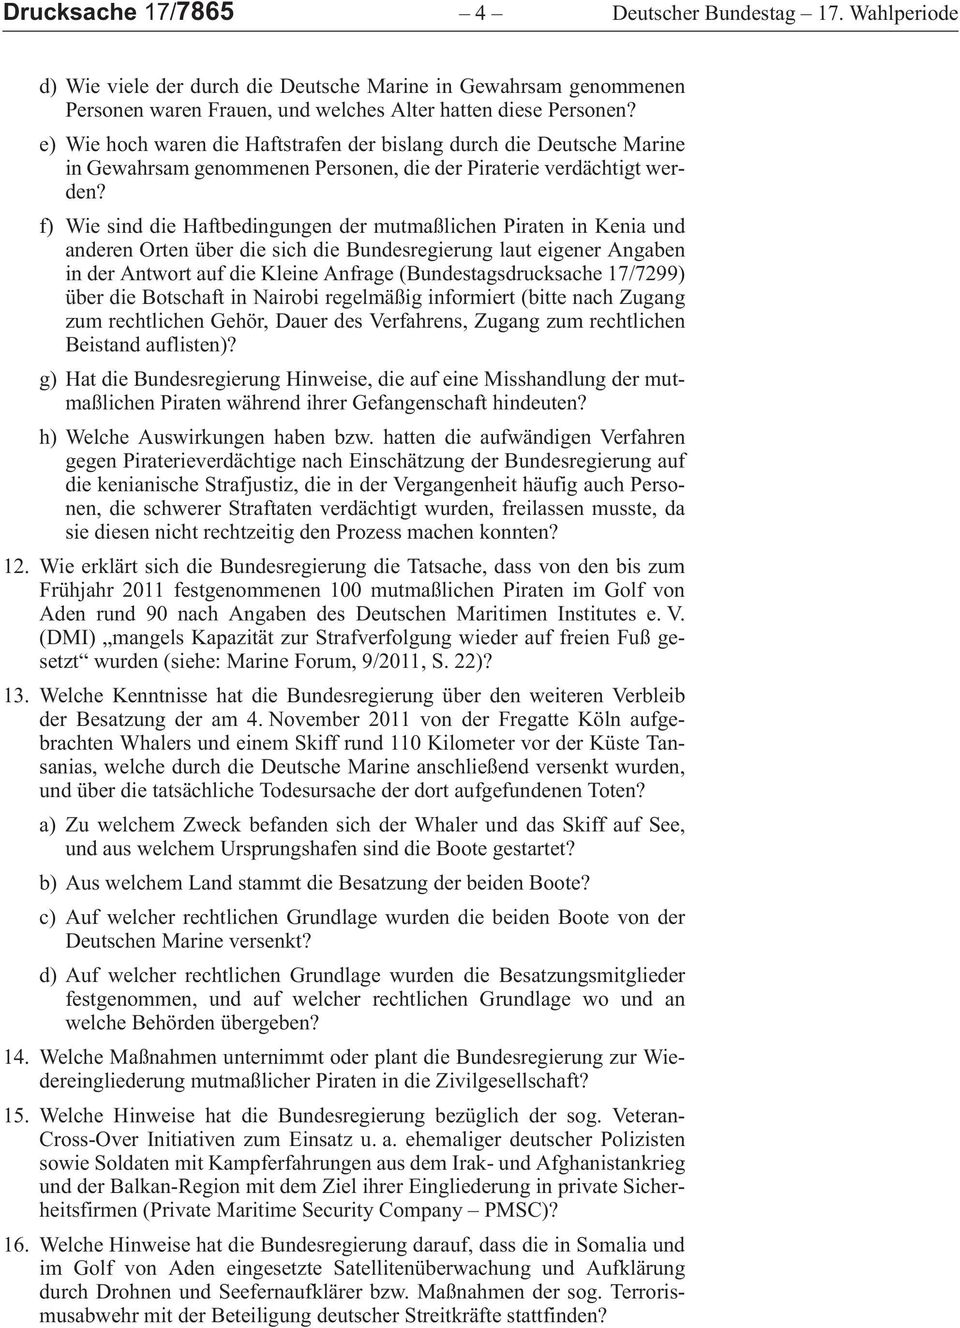 f)wiesinddiehaftbedingungendermutmaßlichenpirateninkeniaund anderenortenüberdiesichdiebundesregierunglauteigenerangaben inderantwortaufdiekleineanfrage (Bundestagsdrucksache17/7299)